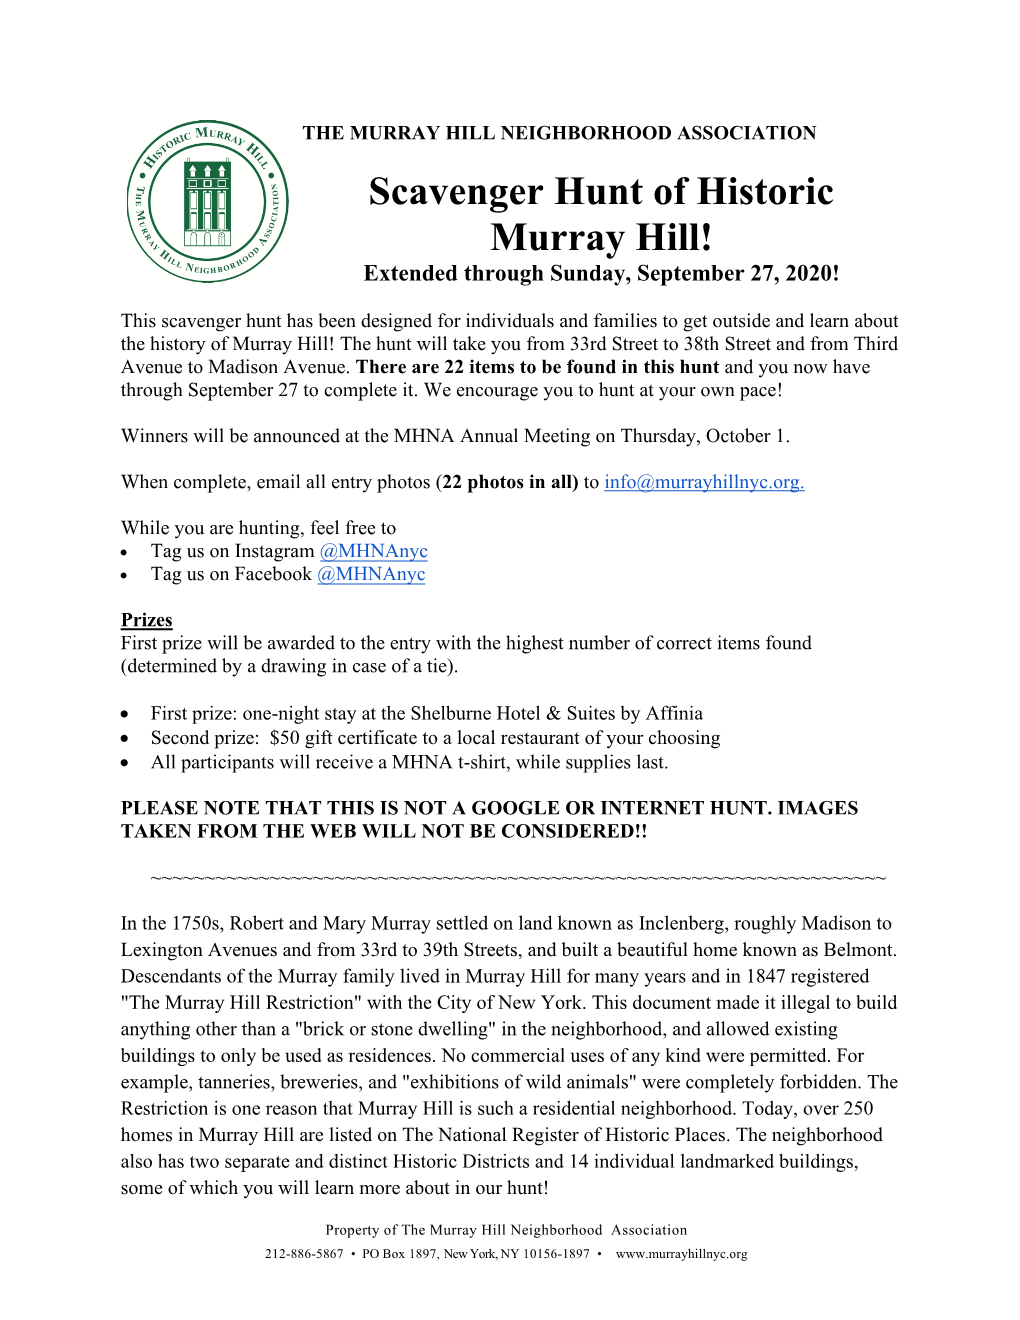 Scavenger Hunt of Historic Murray Hill! Extended Through Sunday, September 27, 2020!